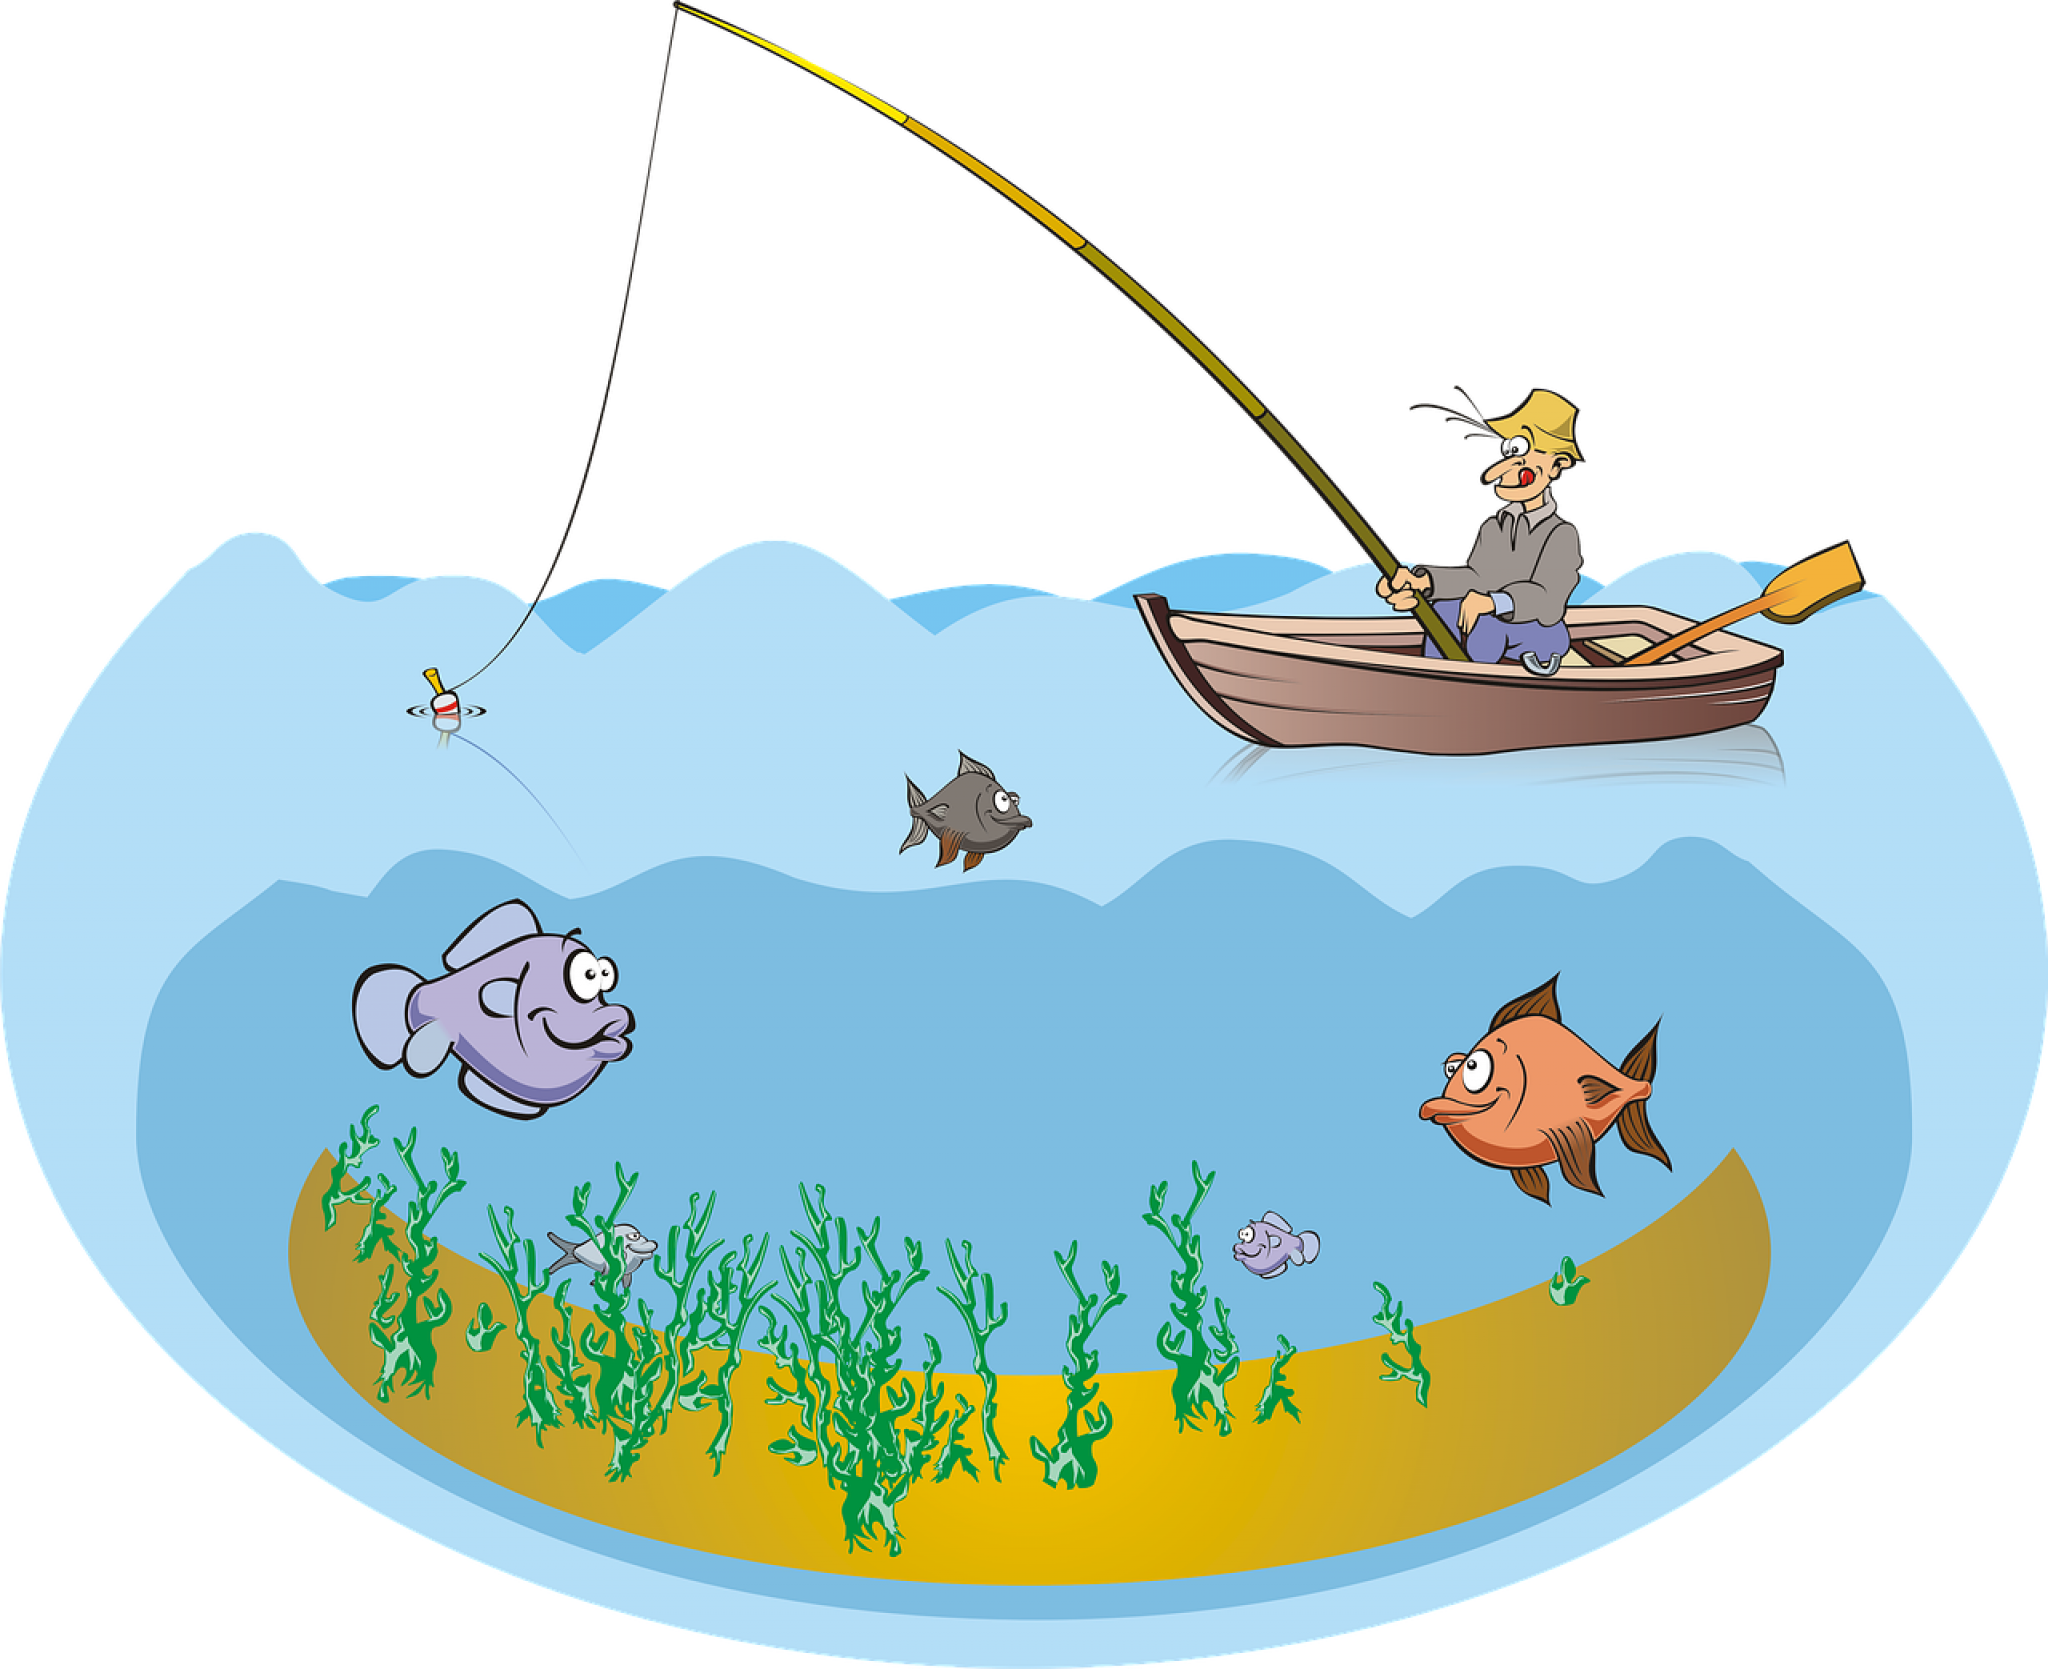 Рыбалка мультяшная. Рыбалка рисунок. Рыбак с удочкой в лодке. Рыбалка картинки для детей.